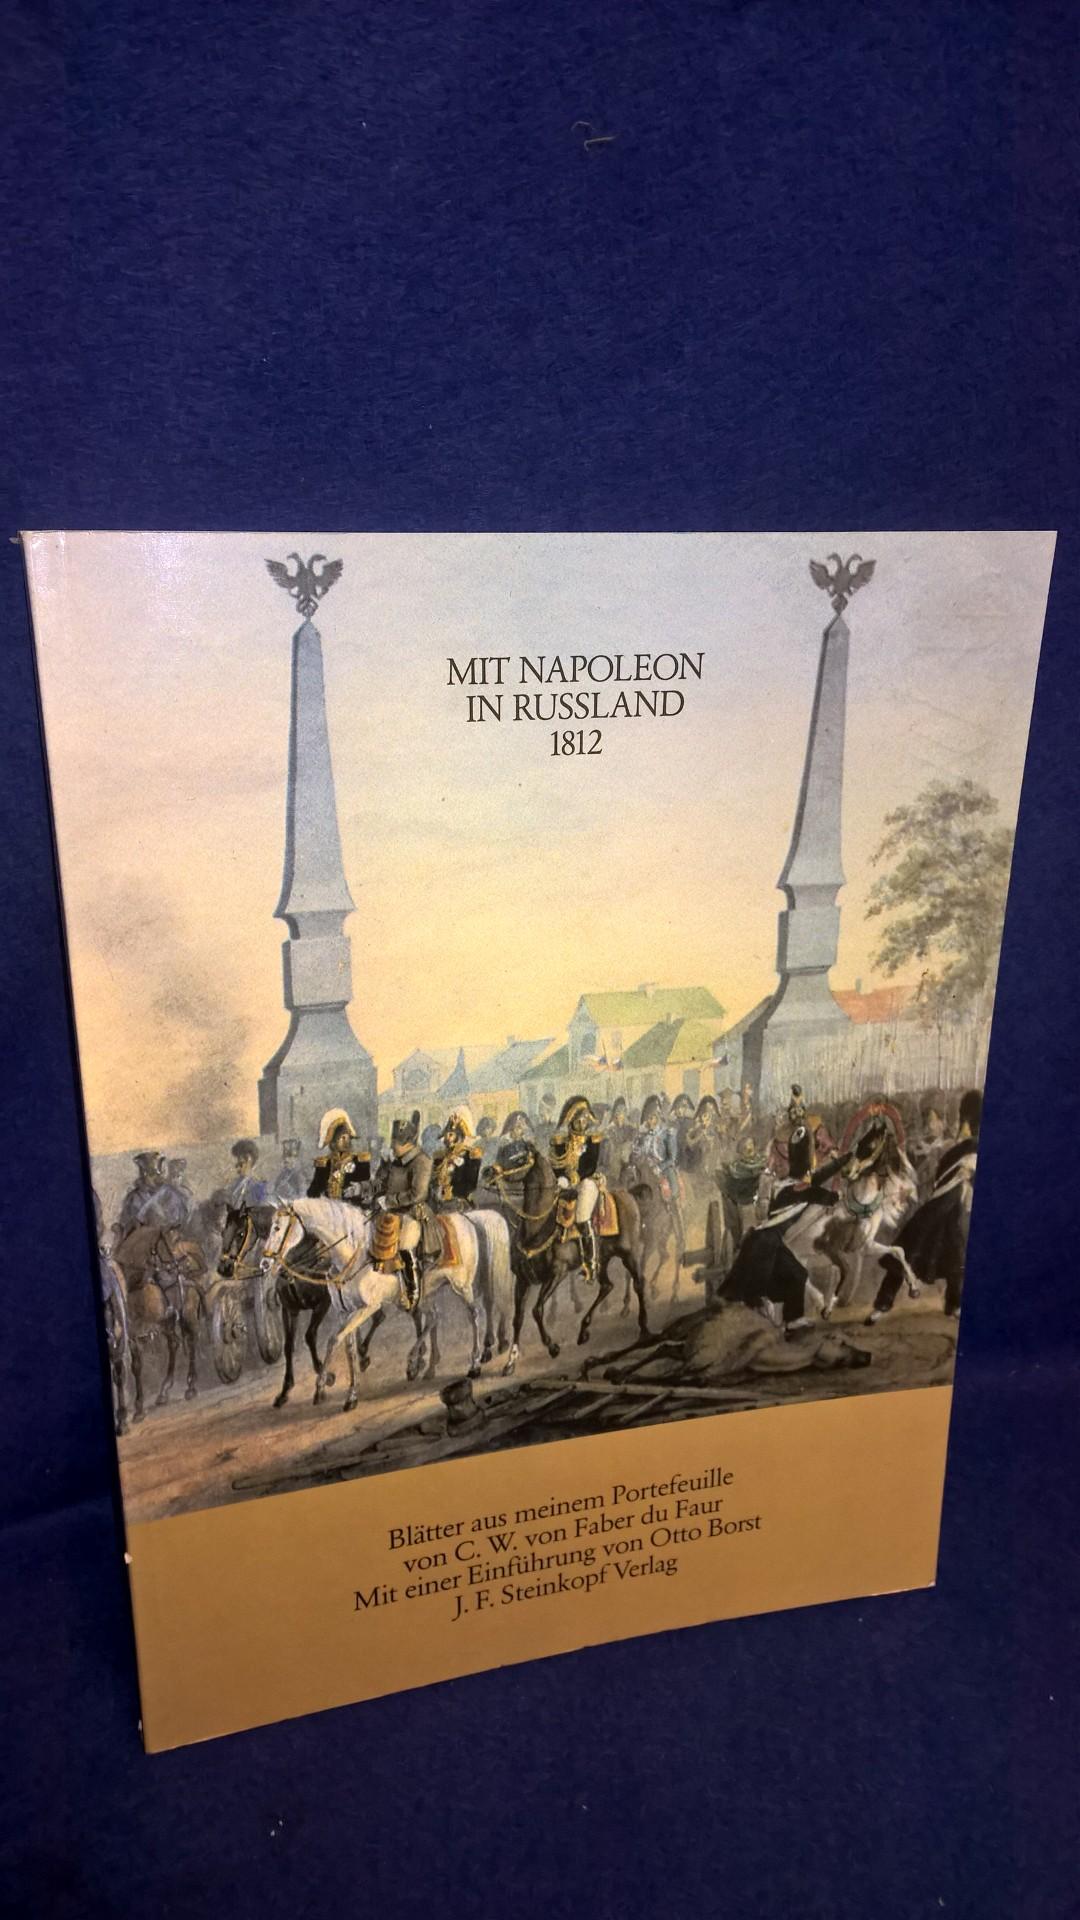 Mit Napoleon in Rußland 1812. Blätter aus meinem Portefeuille. Erläuternde Andeutungen zu diesem Werk von Friedrich von Kausler.